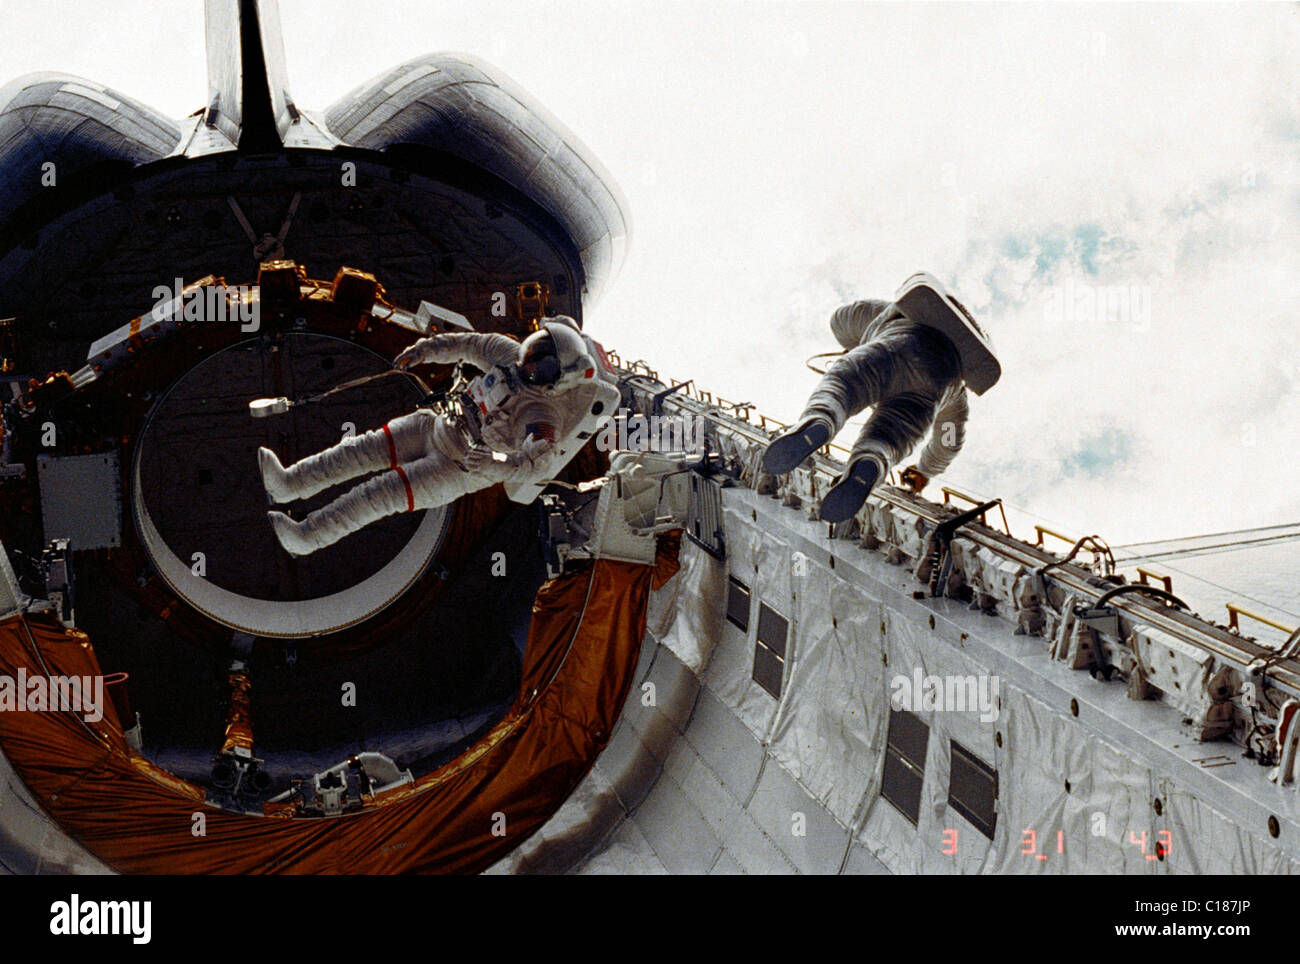 Les astronautes Story Musgrave et Don Peterson lors d'une sortie extravéhiculaire de la navette spatiale Challenger. 1983 Banque D'Images